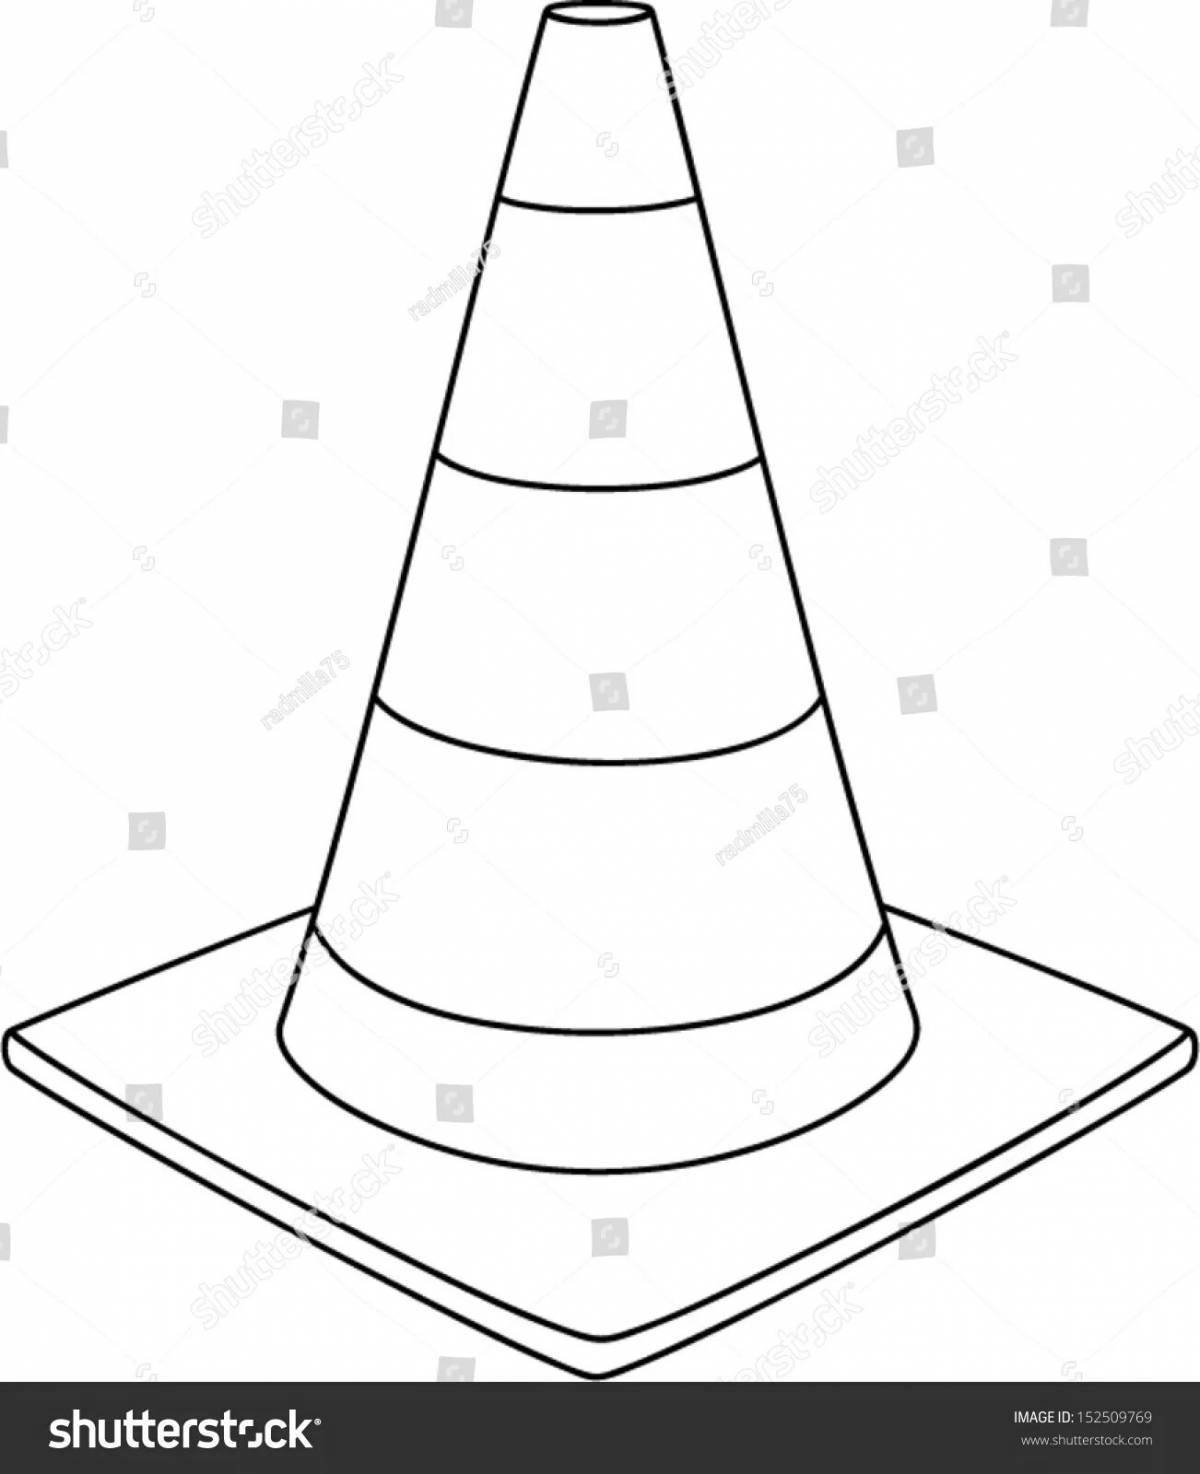 Traffic cones #8